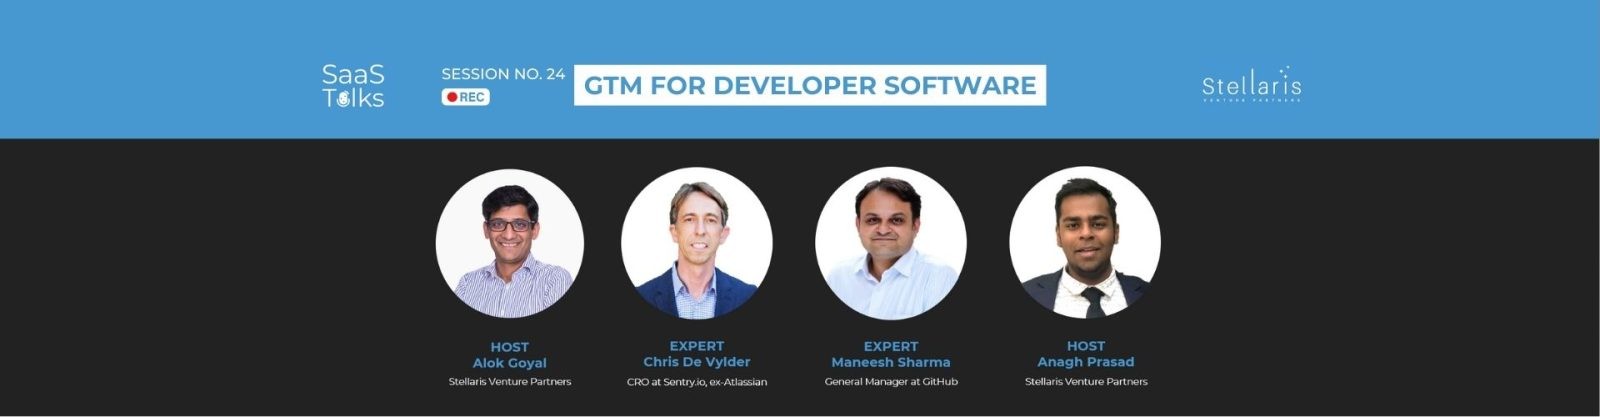 SaaS Talks #24: GTM for Developer Software